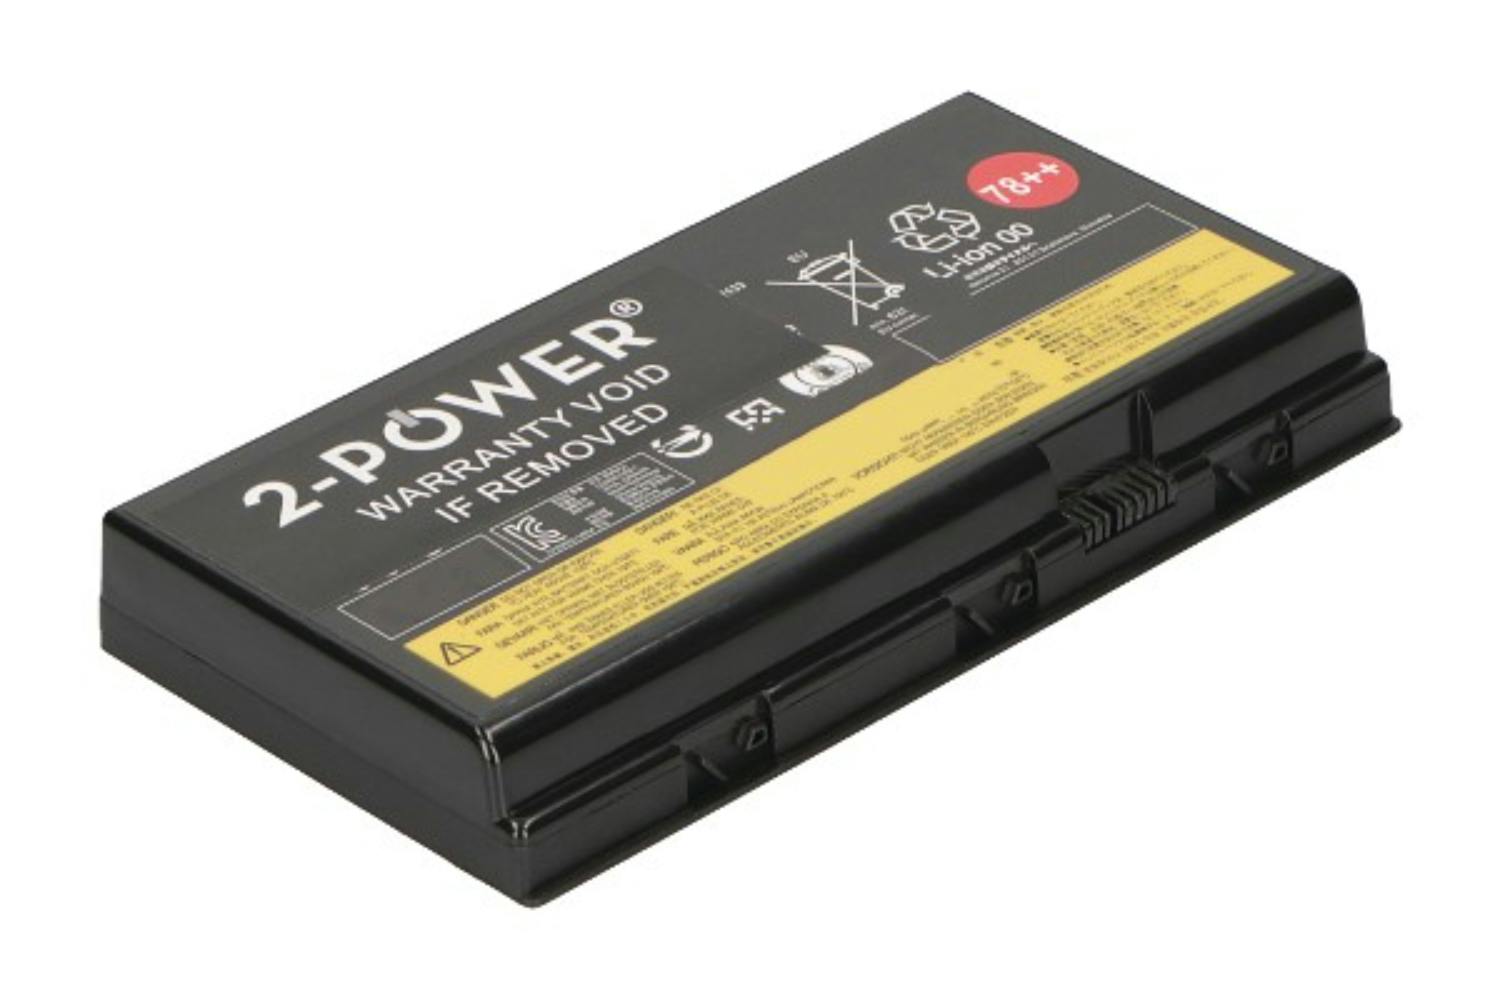 2-Power CBP3752A 6200mAh Main Battery Pack